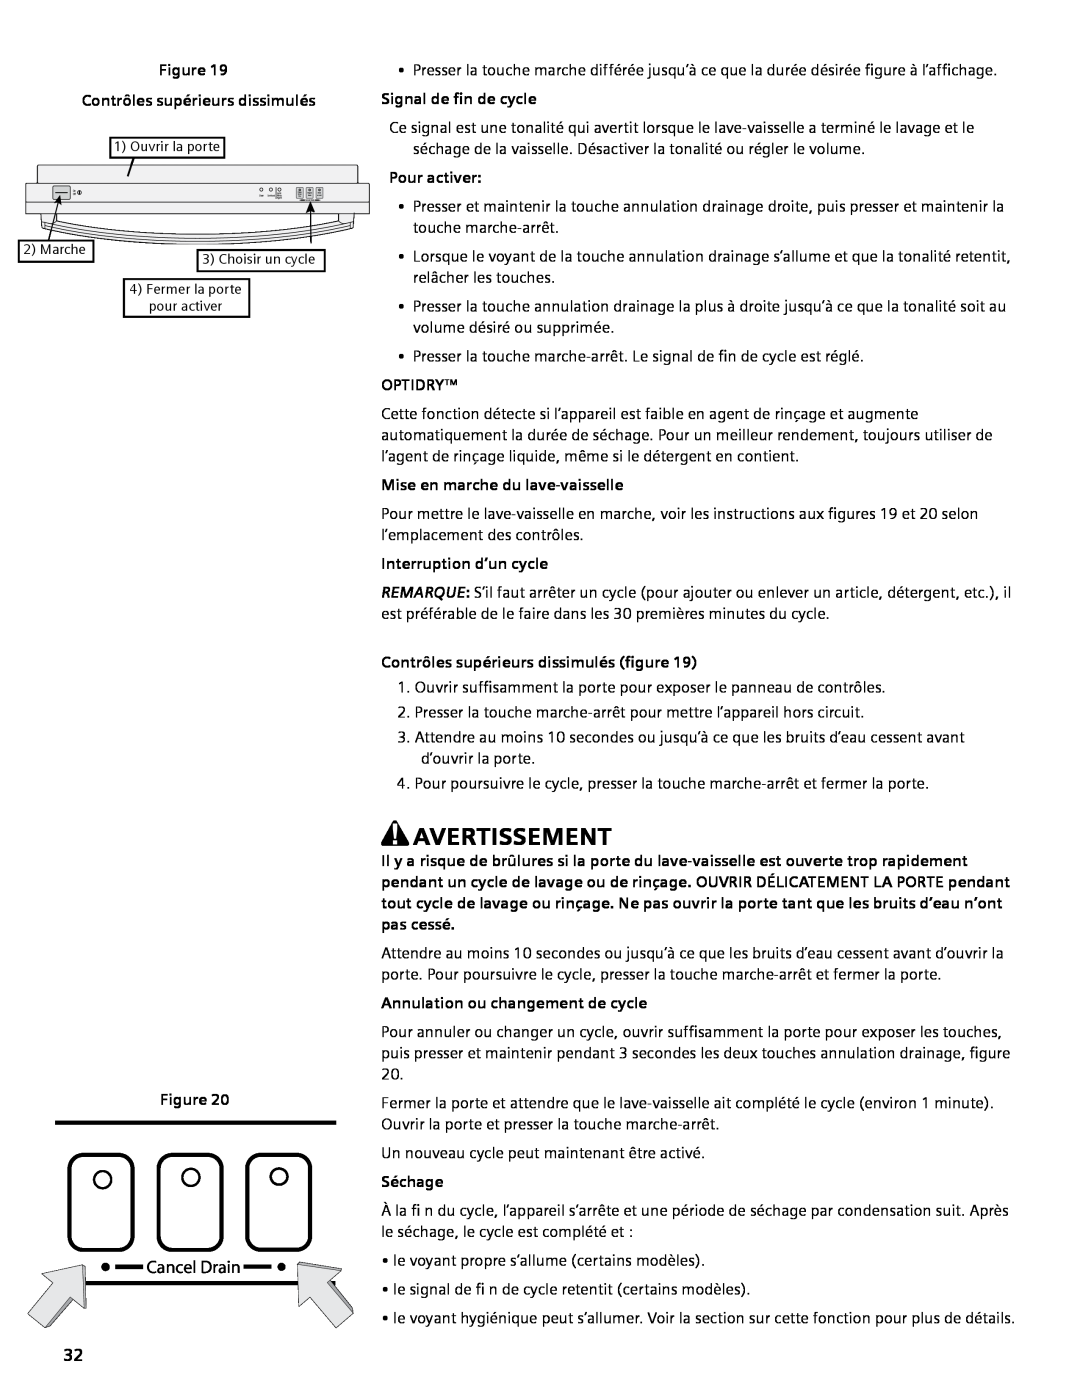 Bosch Appliances SGV45E03UC Contrôles supérieurs dissimulés, Signal de fin de cycle, Mise en marche du lave-vaisselle 